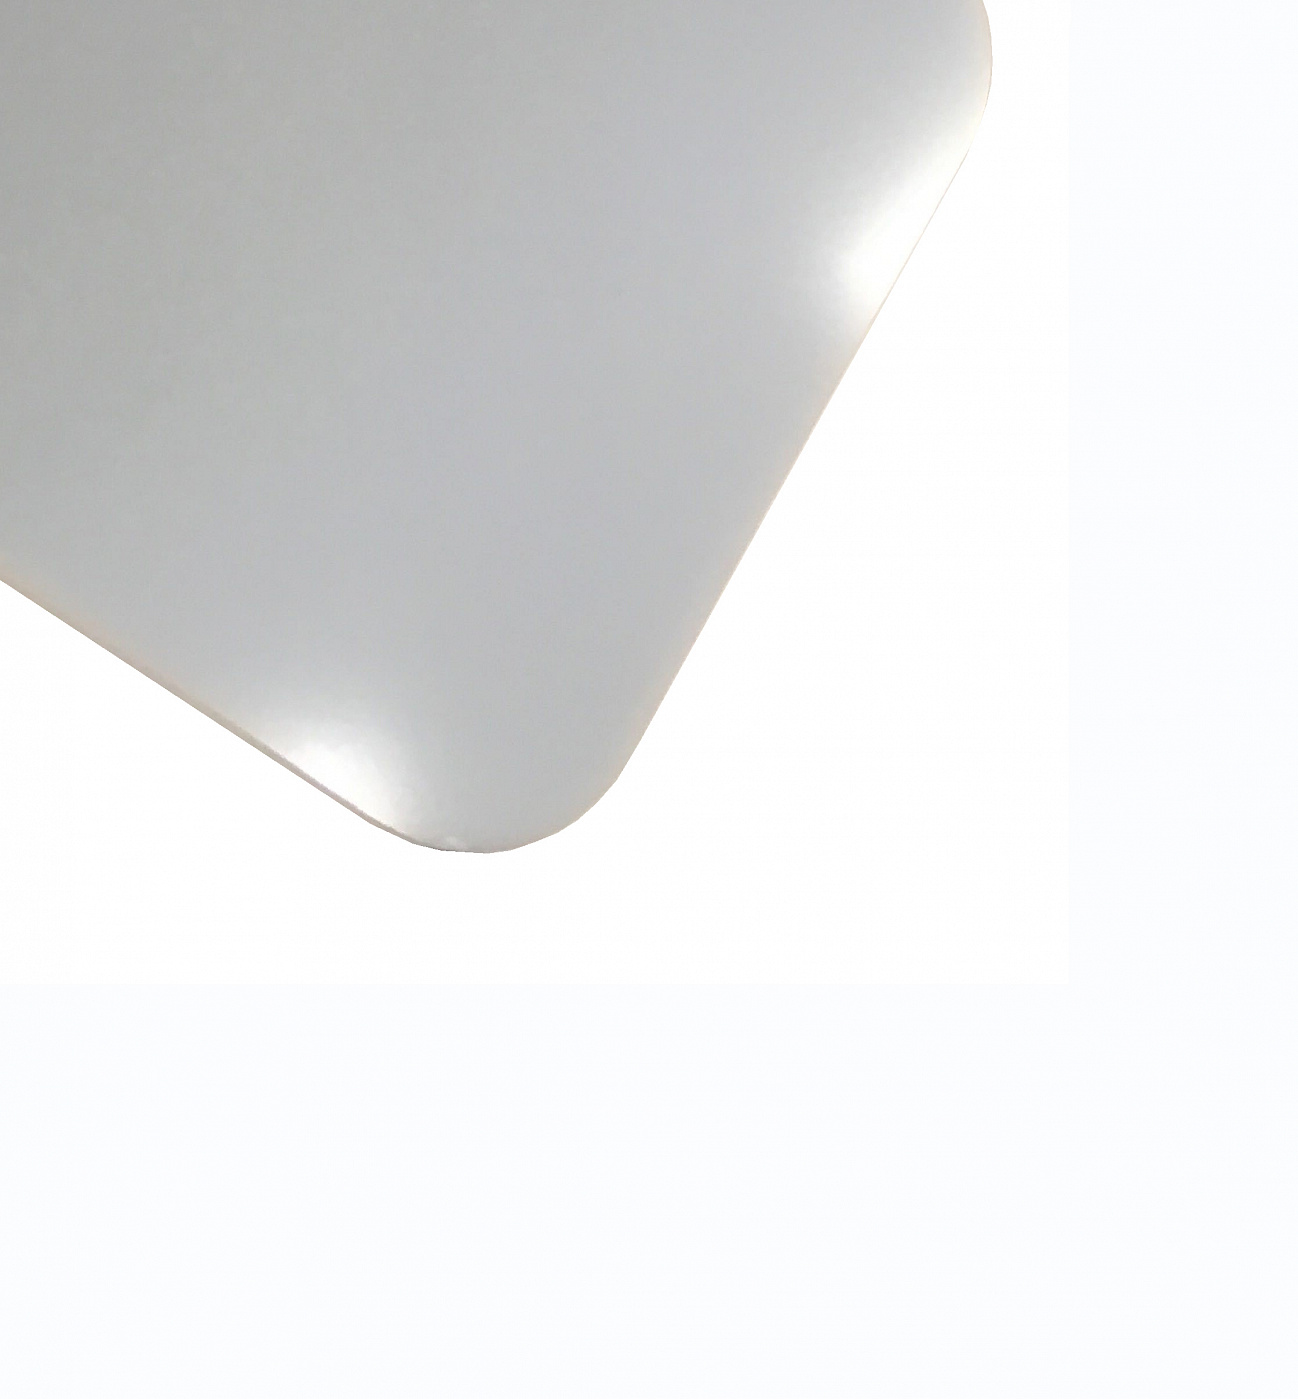 Планшет для пленэра из оргстекла 3 мм, под лист размера А3, цвет белый планшет для рисования песком 35 × 50 см фанера оргстекло с ной подсветкой